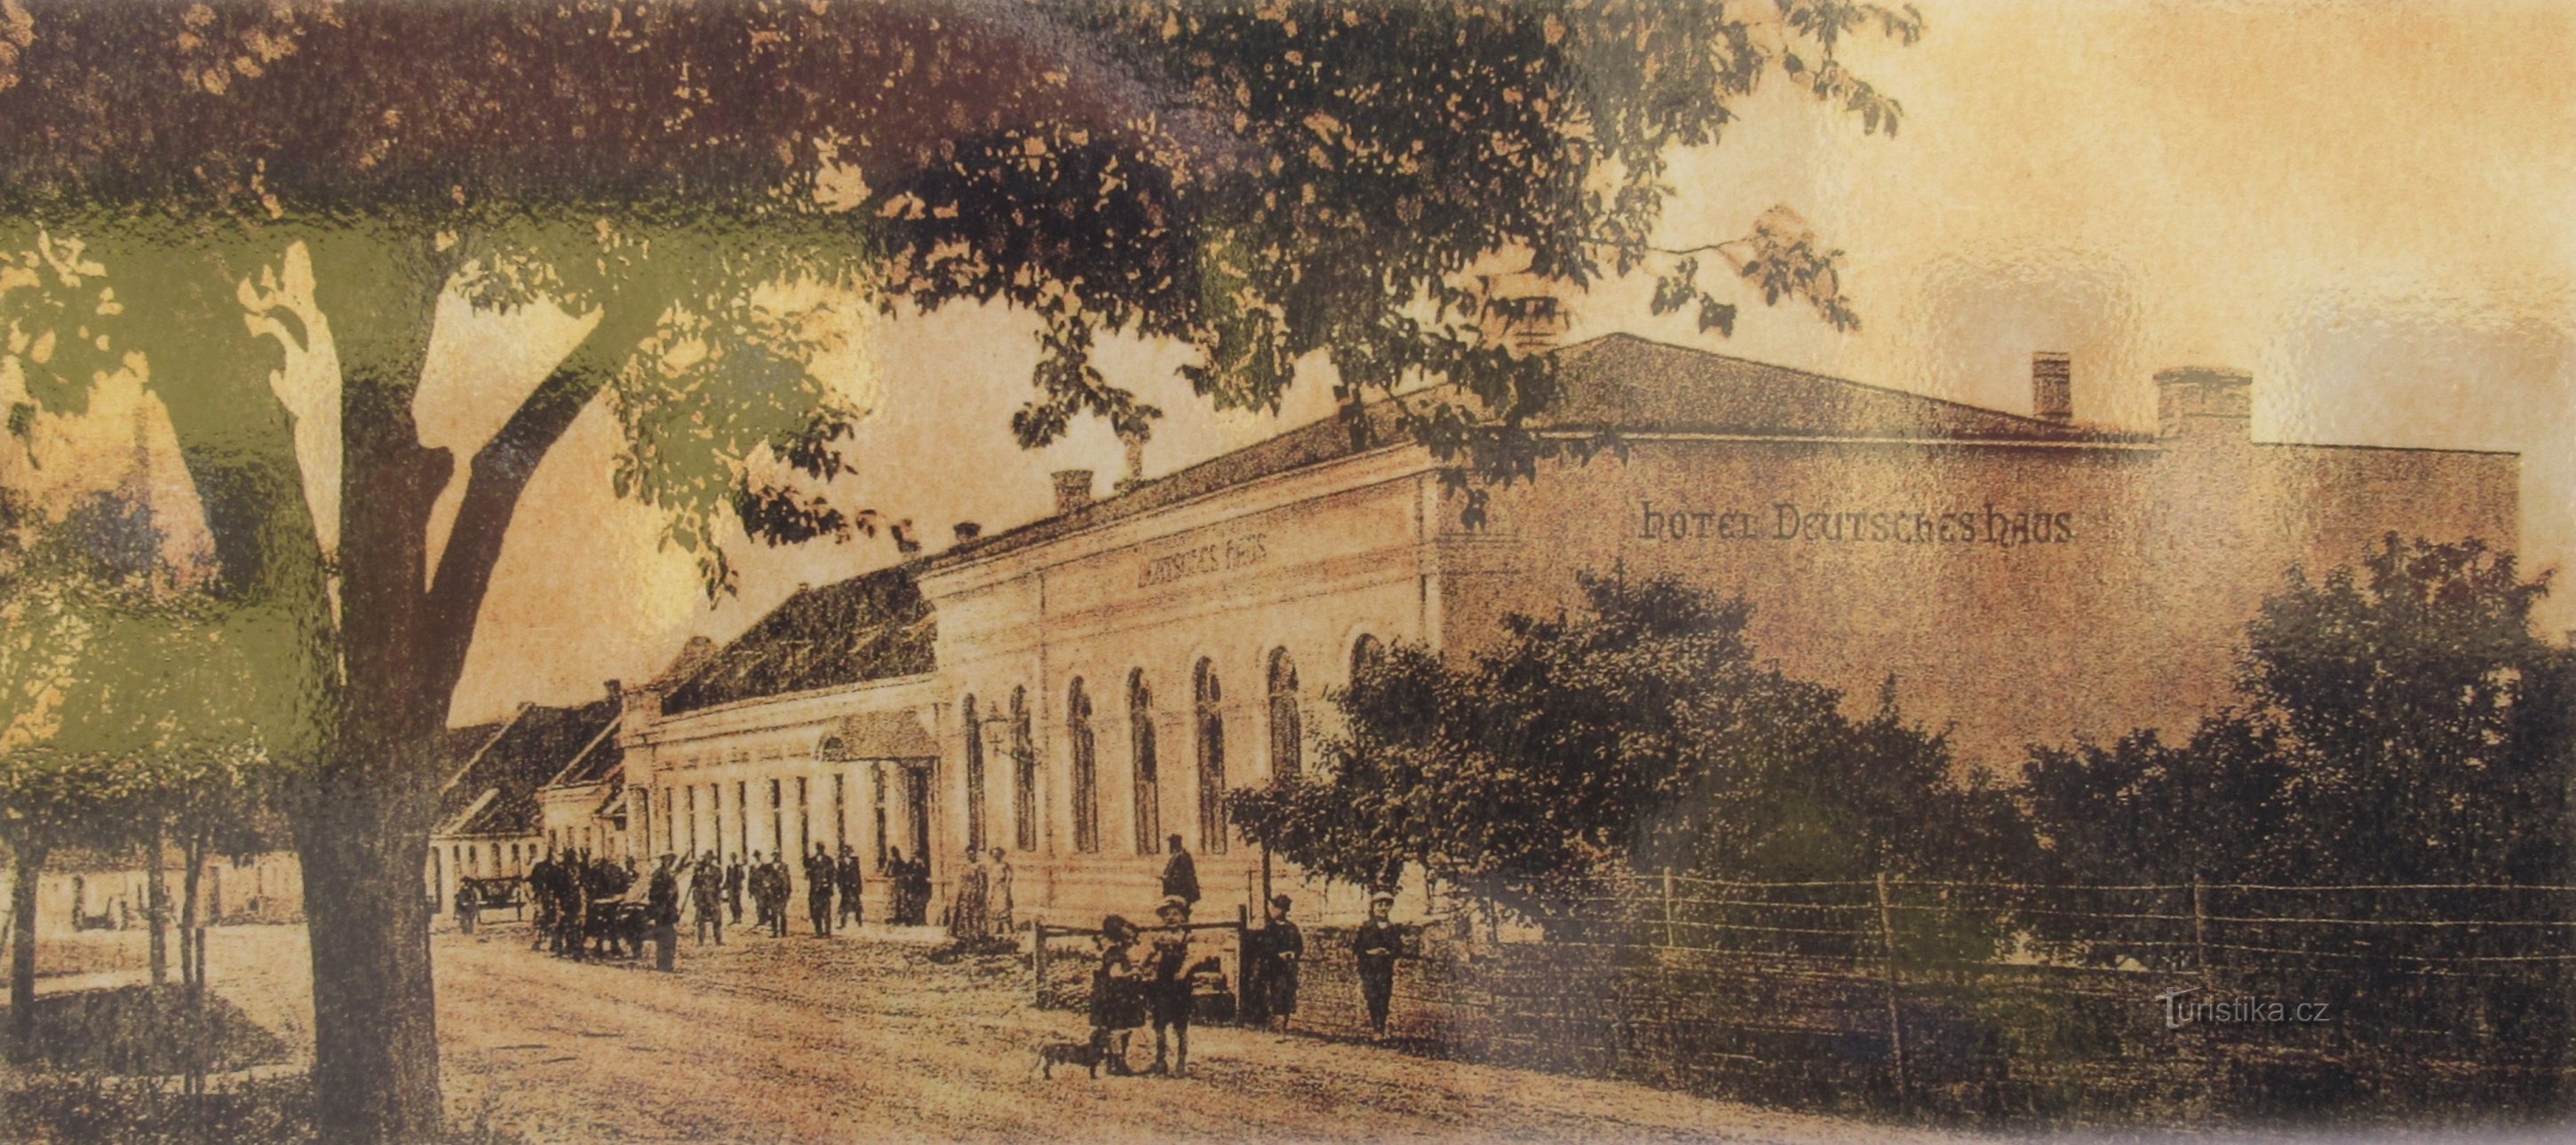 Le bâtiment de l'ancienne imprimerie Ludvík sur une carte postale des années 20 (trans